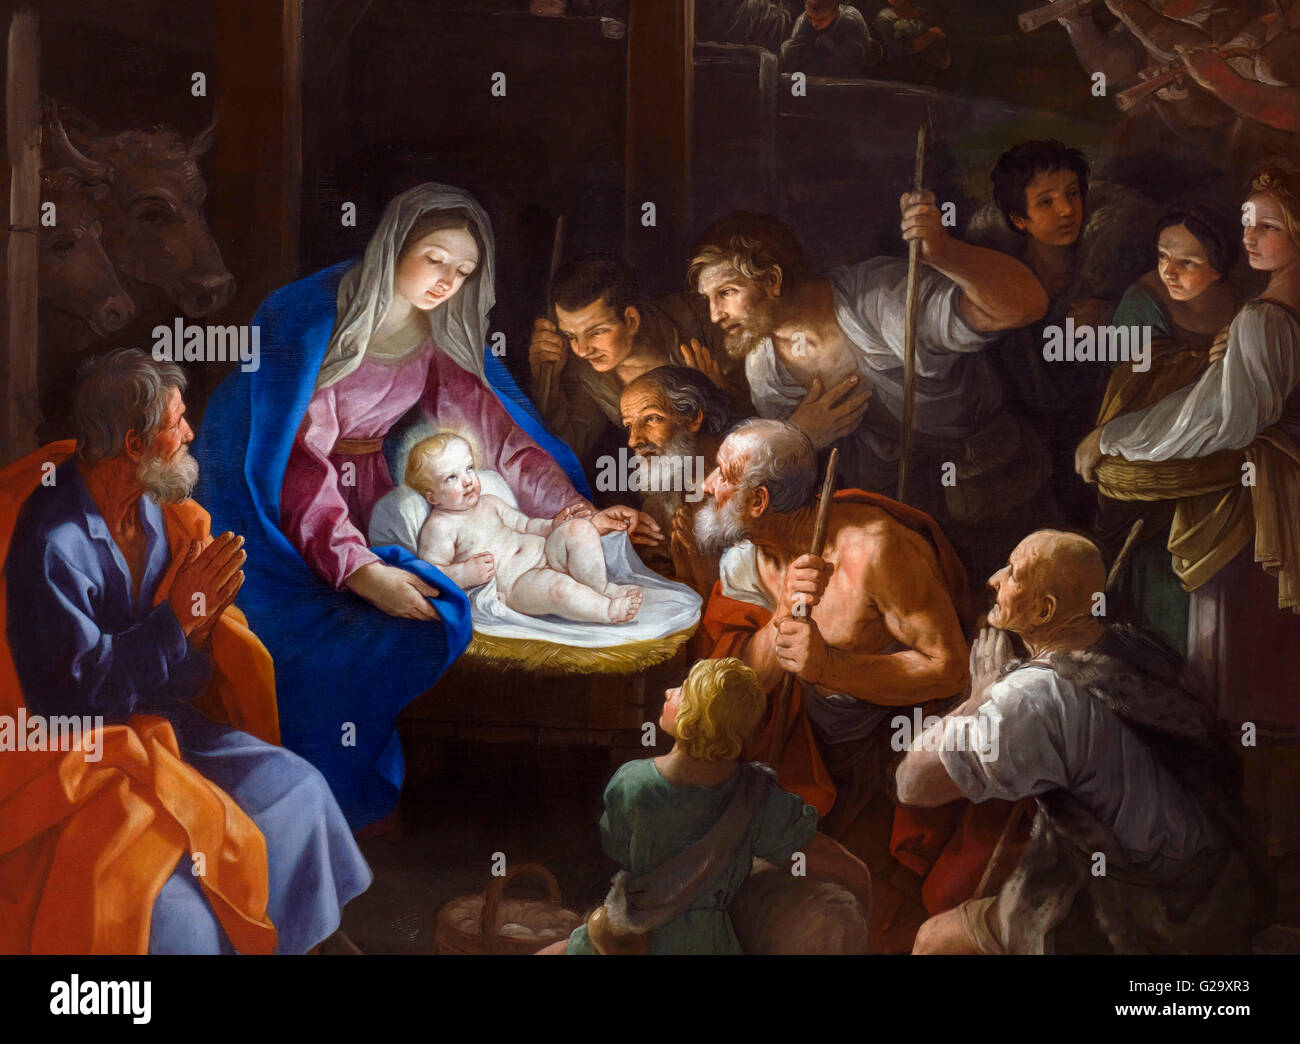 Nativité peinture.'l'Adoration des bergers" par Guido Reni (1575-1642), huile sur toile, 1640. C'est un détail d'une grande peinture, G29XR6. Elle représente une scène de la nativité avec l'enfant Jésus d'être visité par des bergers. Banque D'Images